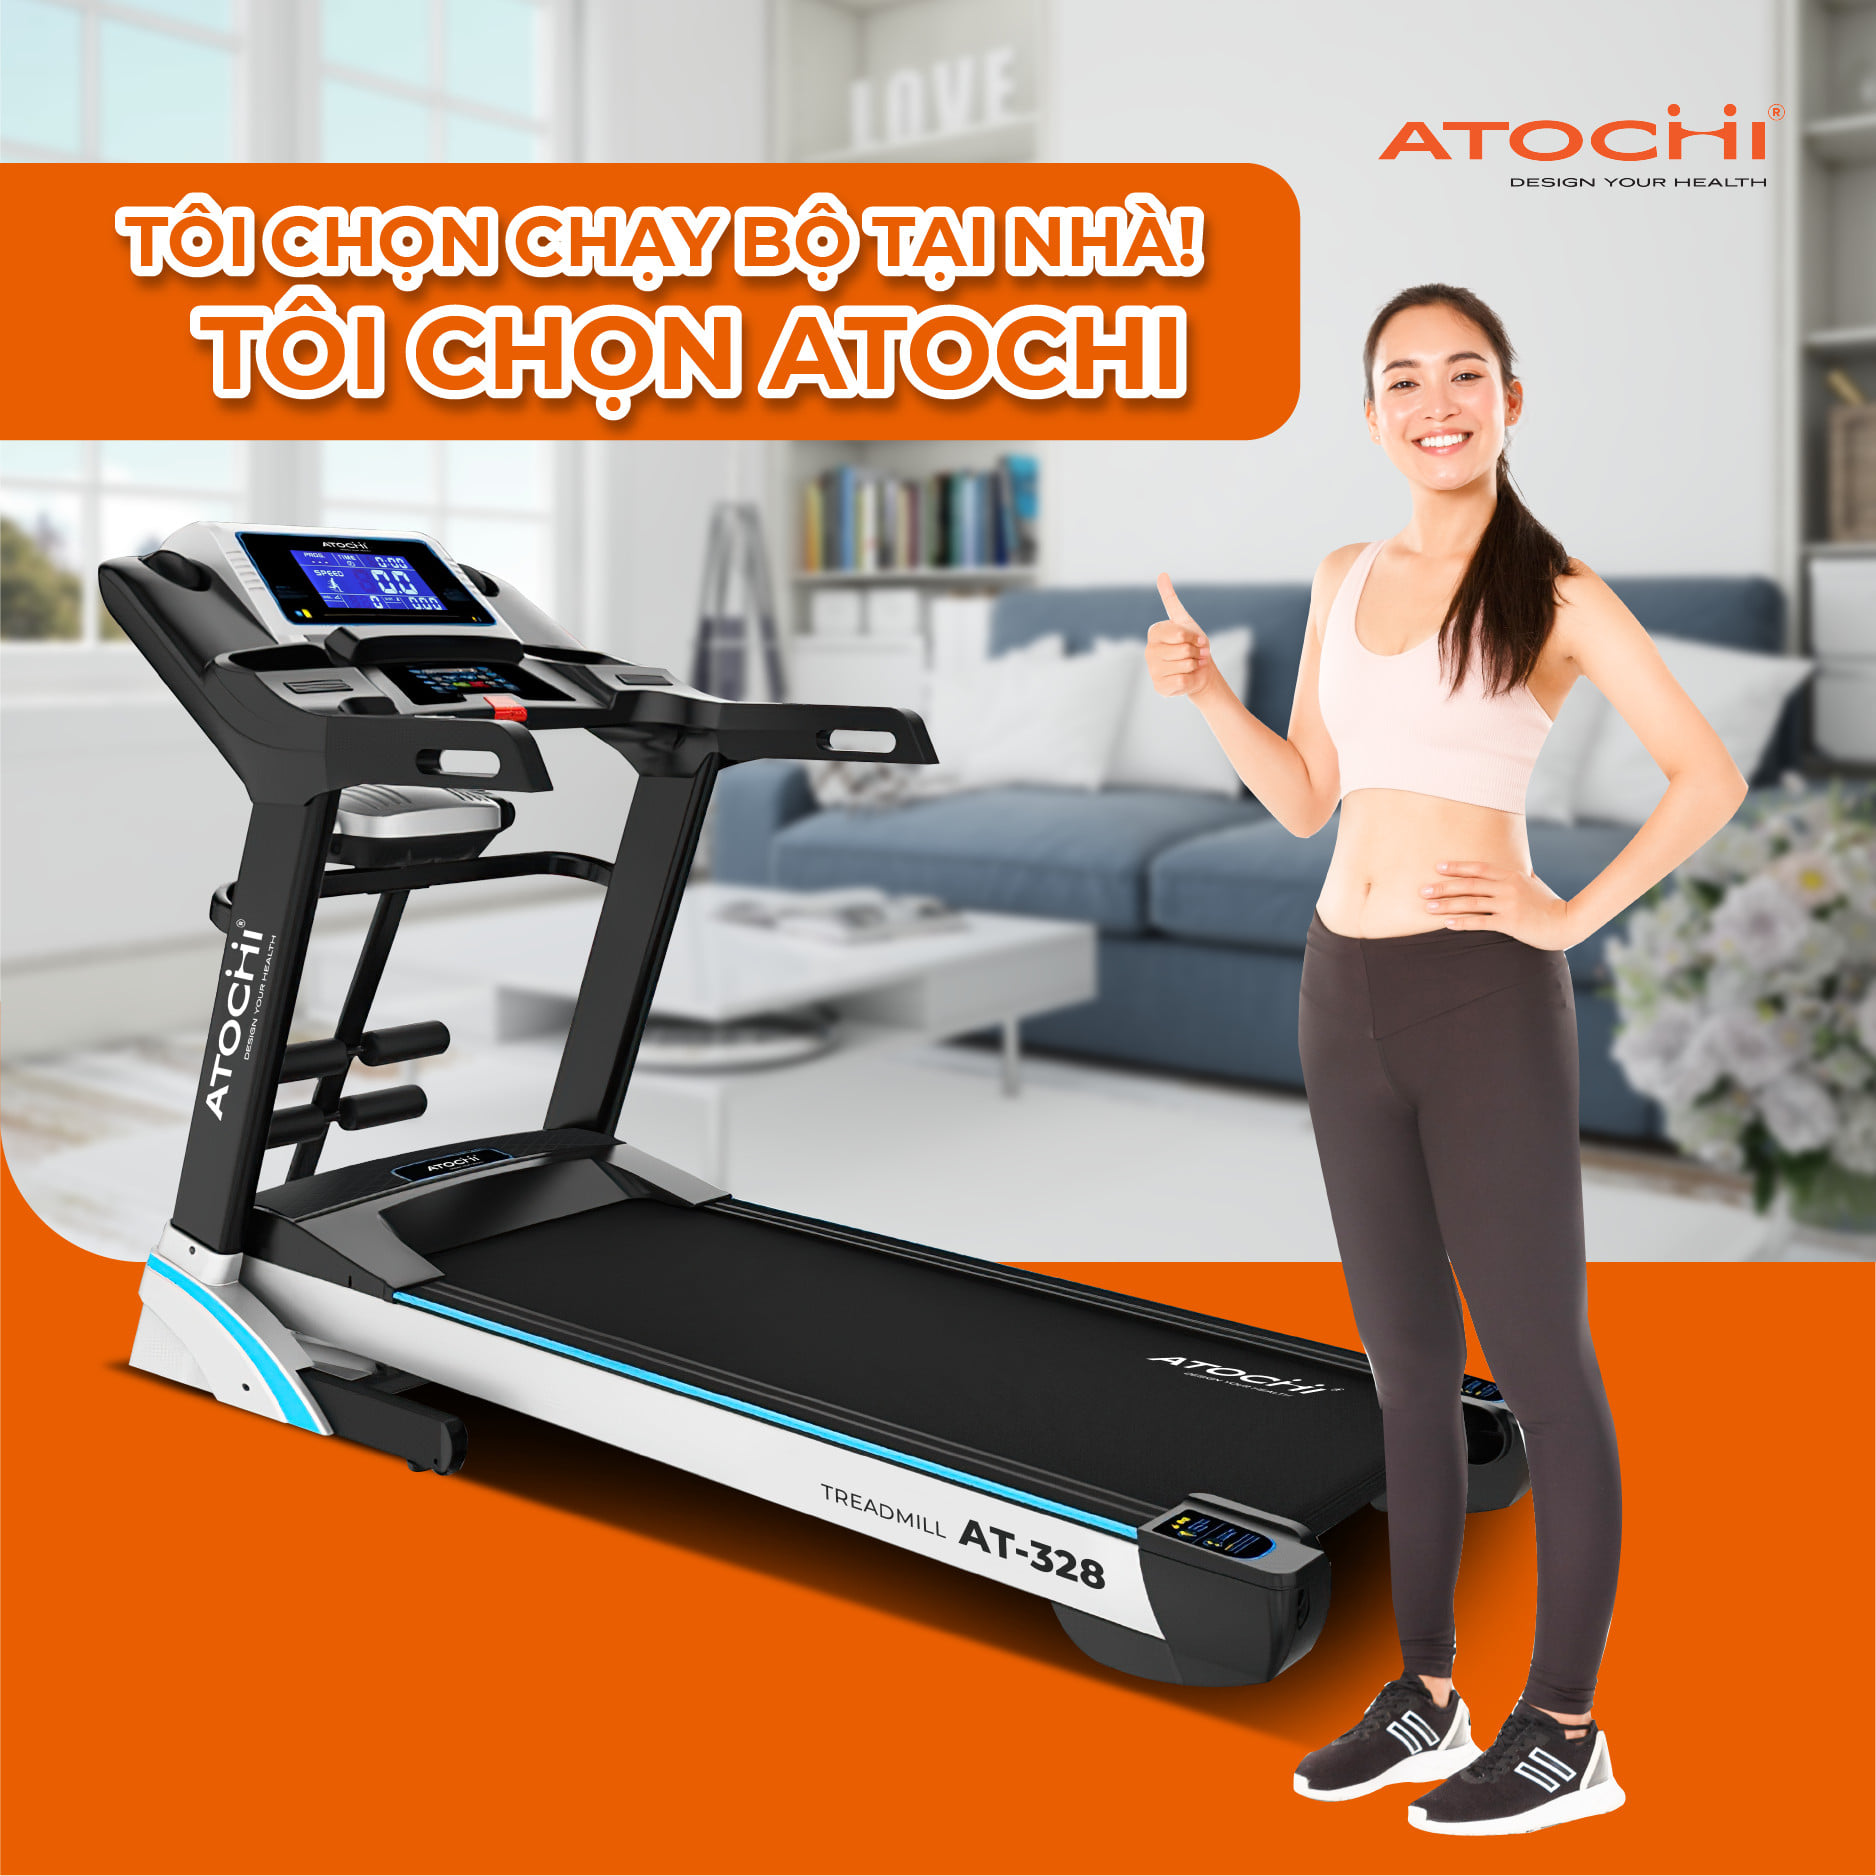 Máy chạy bộ Atochi - sự lựa chọn hoàn hảo dành cho bạn